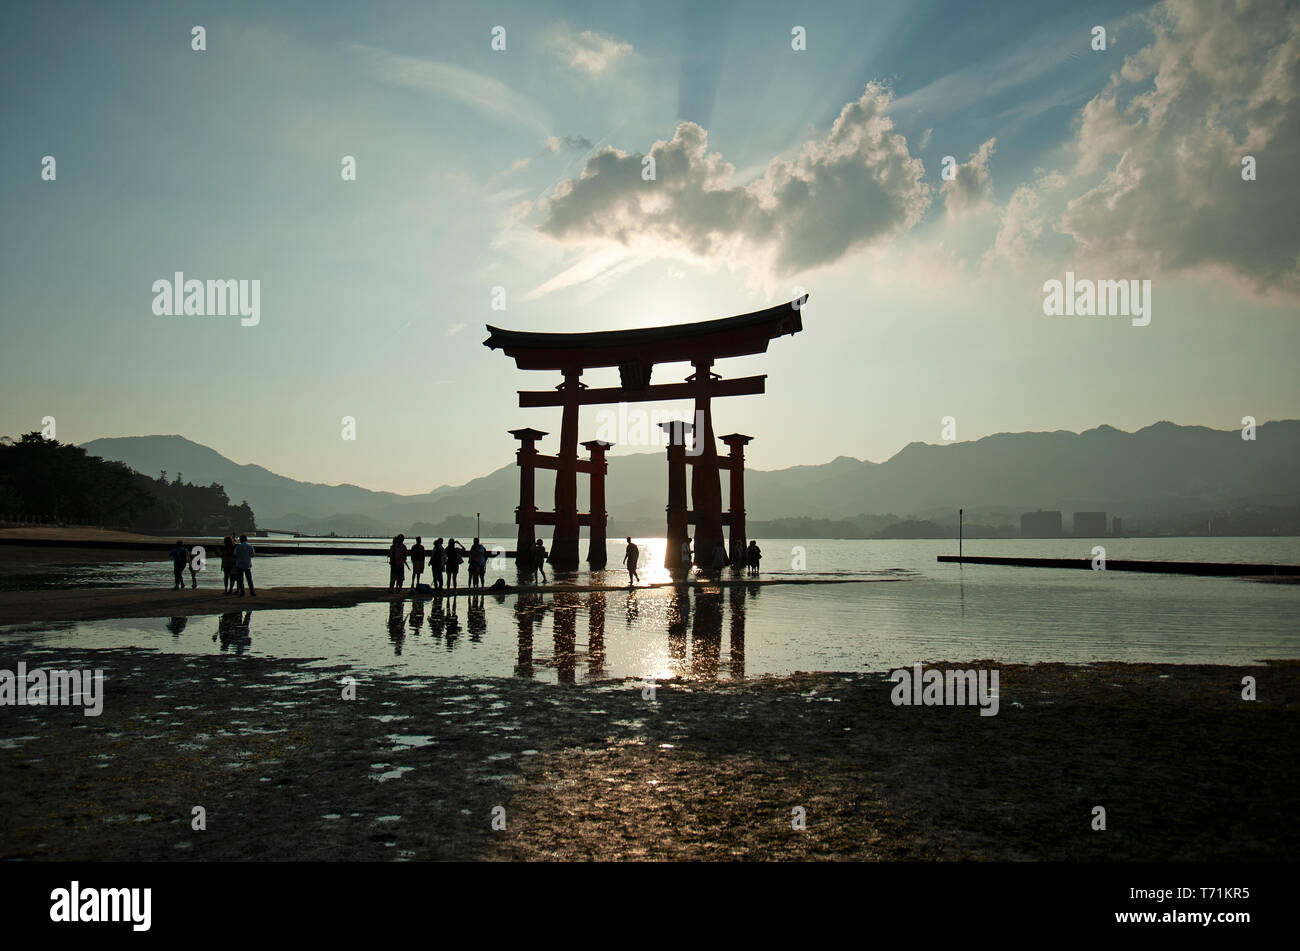 Persone stagliano al tramonto accanto al giant floating torii gate del santuario di Itsukushima, l'isola di Miyajima, Western Honshu, Giappone, Asia Foto Stock